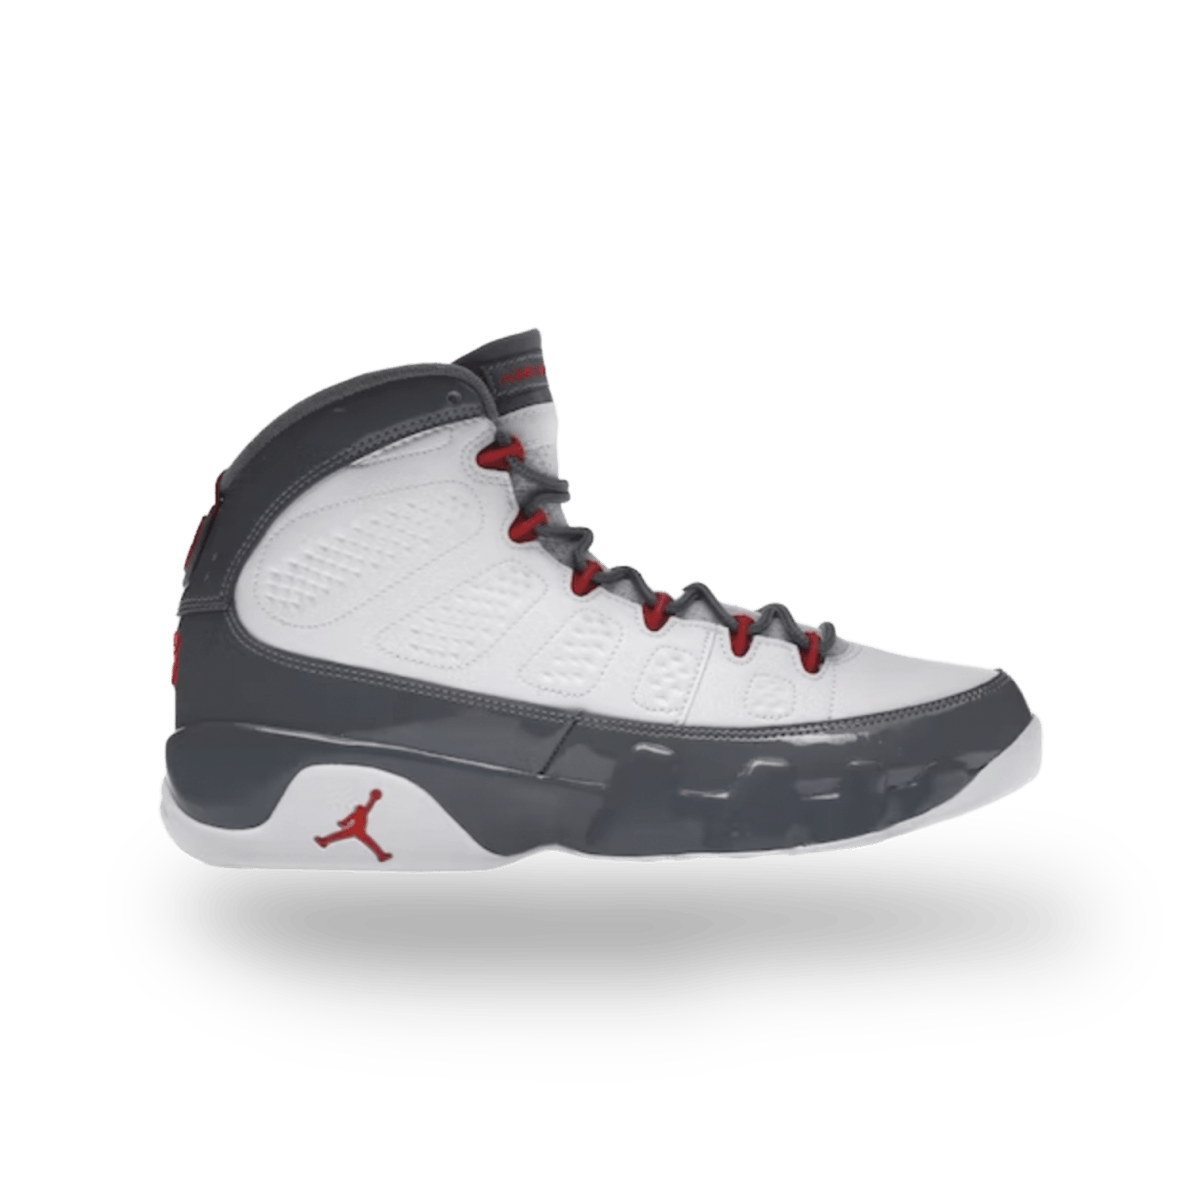 Jordan 9 Retro Fire Red - High Sneaker - Jawns on Fire Sneakers & Streetwear